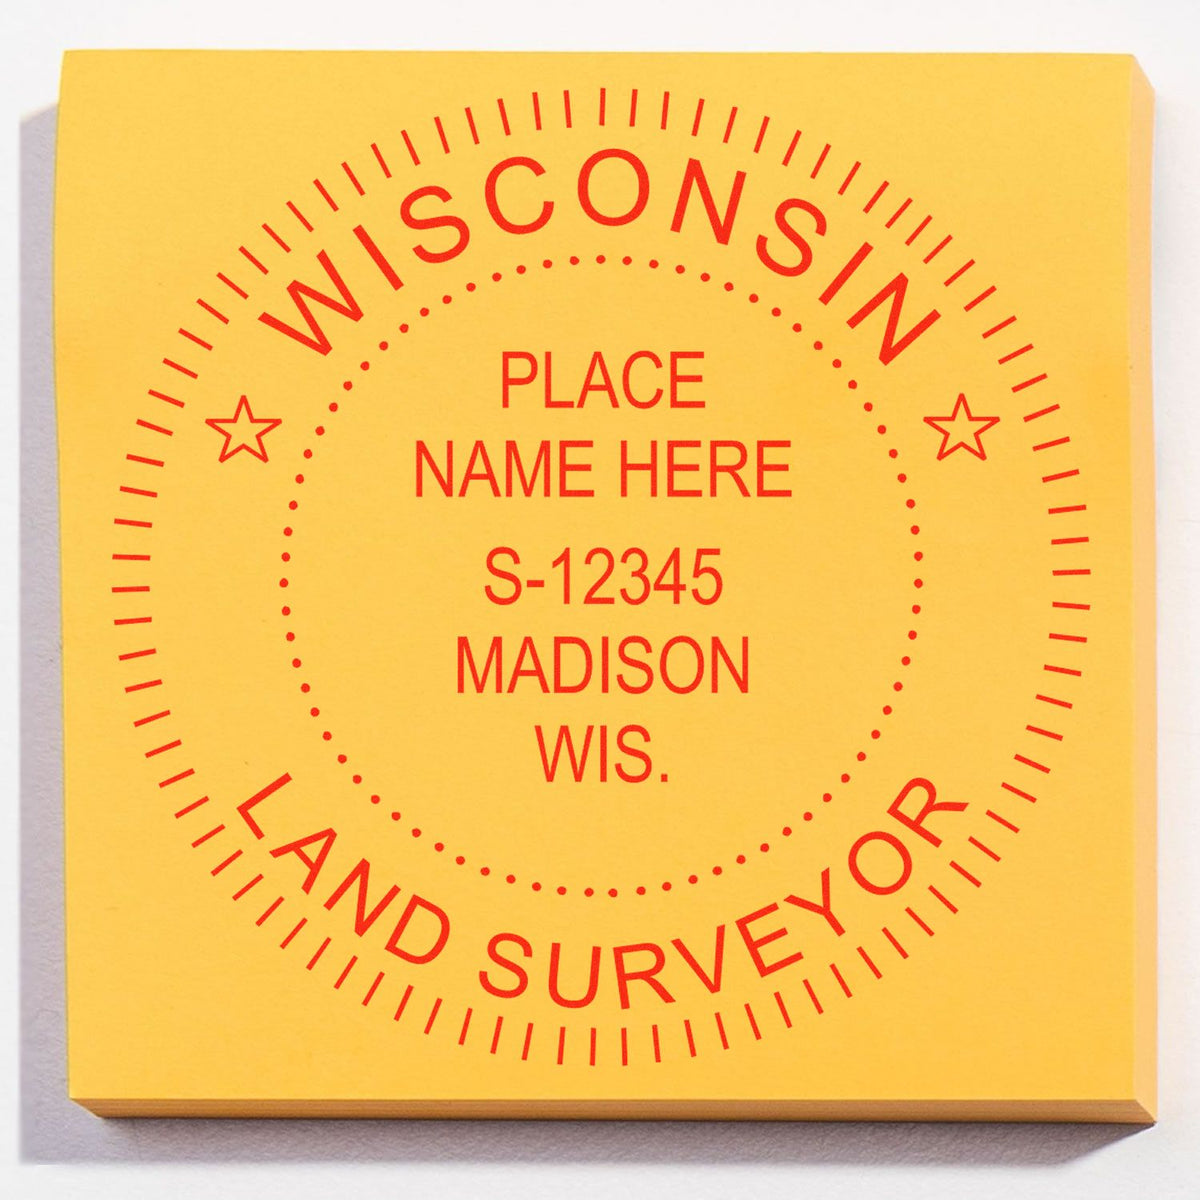 Wisconsin Land Surveyor Seal Stamp In Use Photo